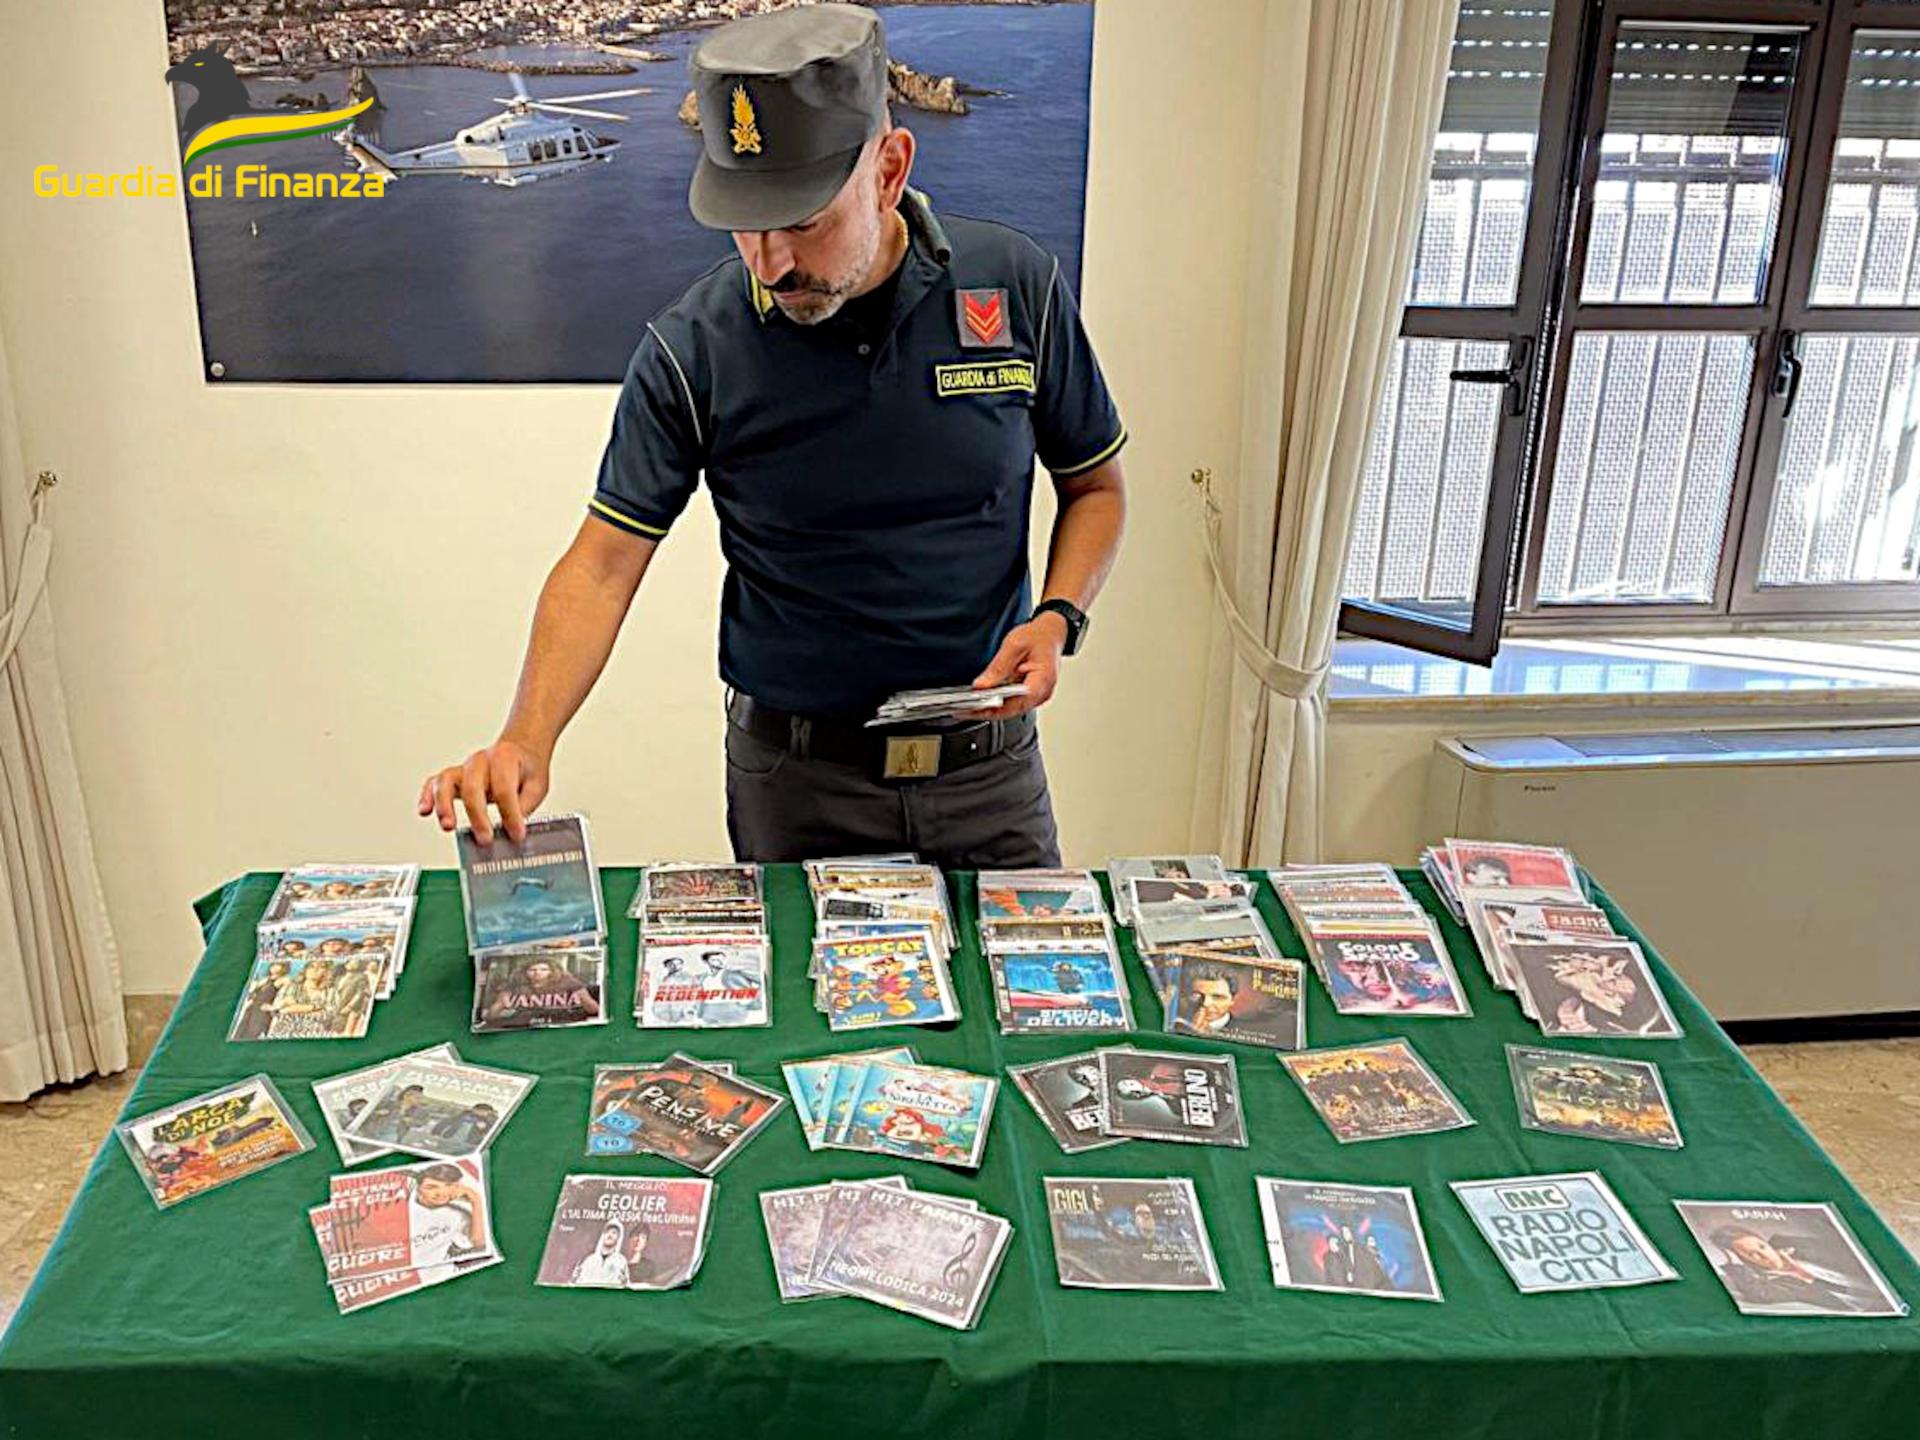 Sequestrati oltre duemila cd e dvd contraffatti, denunciato un catanese